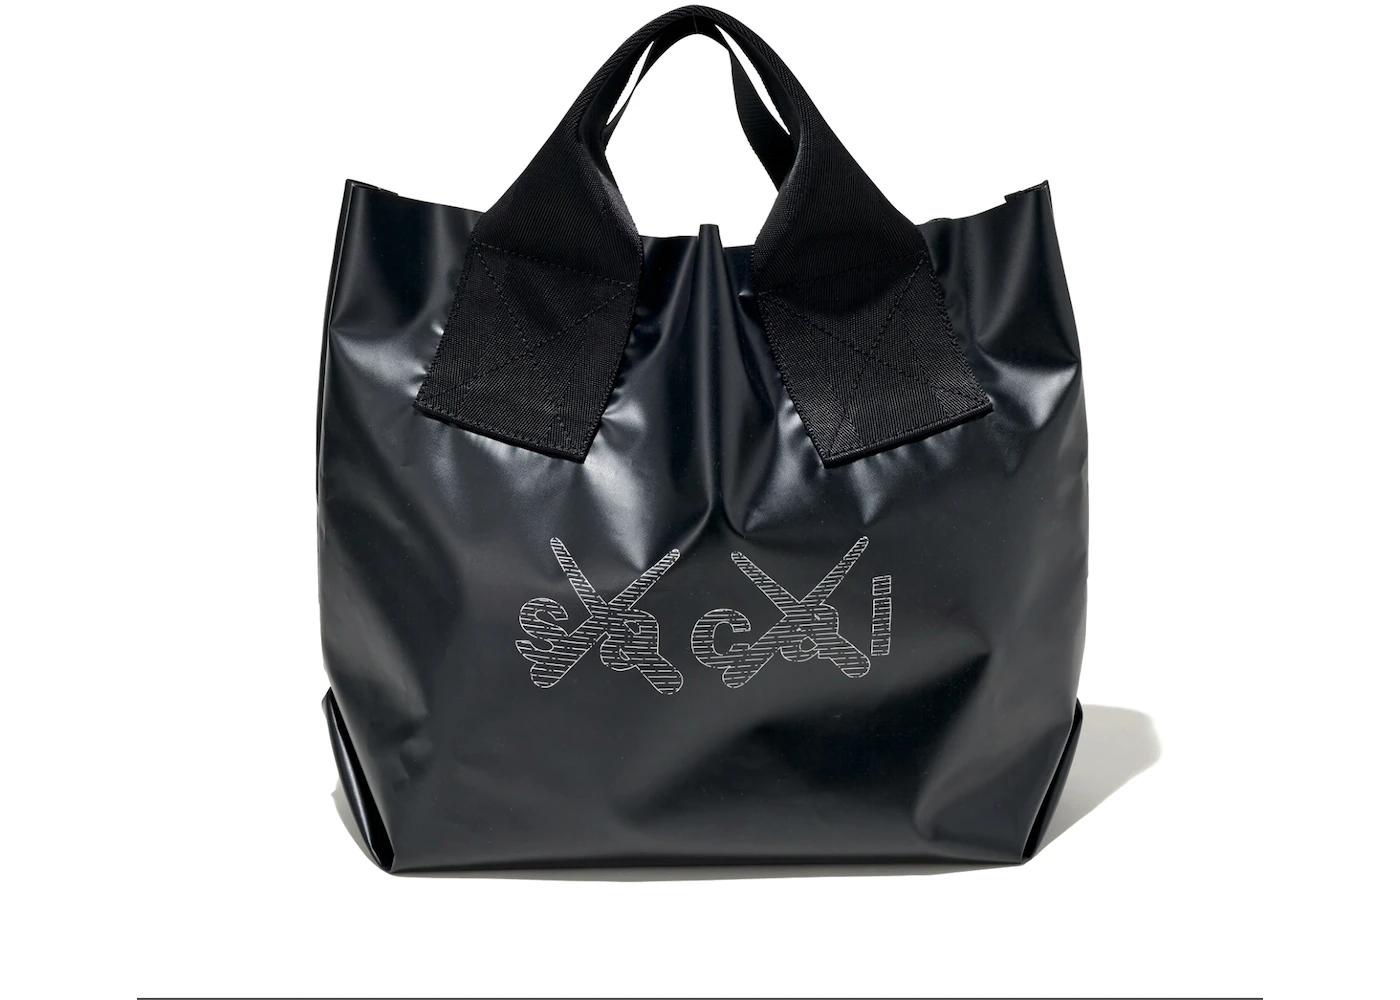 KAWS x Sacai Print Tote Bag Black - FW21 - GB